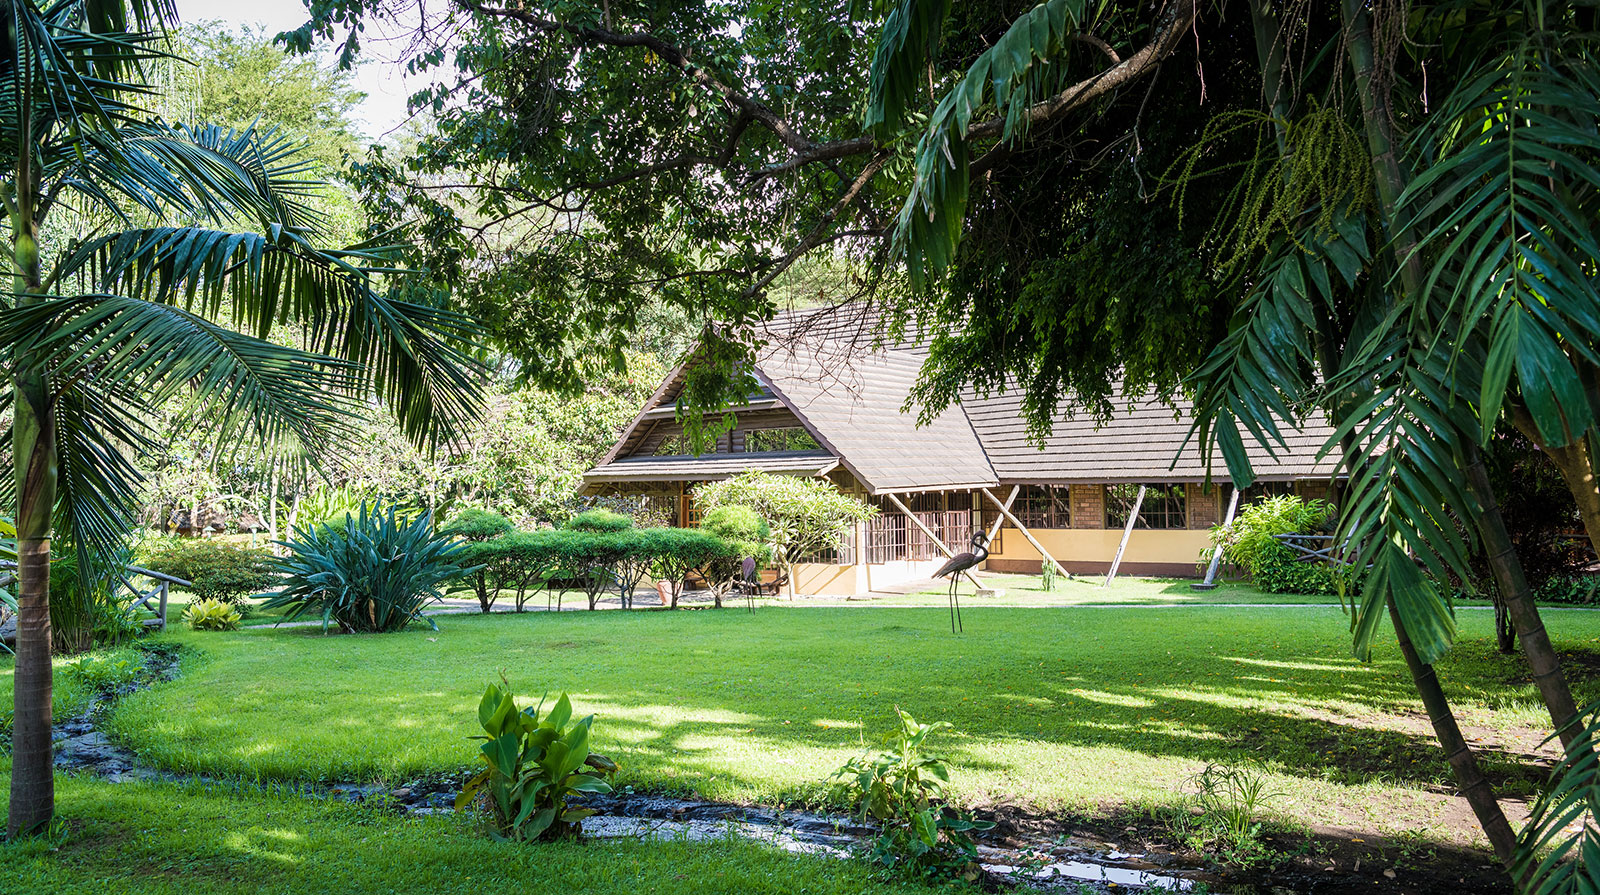 Arumeru Lodge - Jardins magnifiques